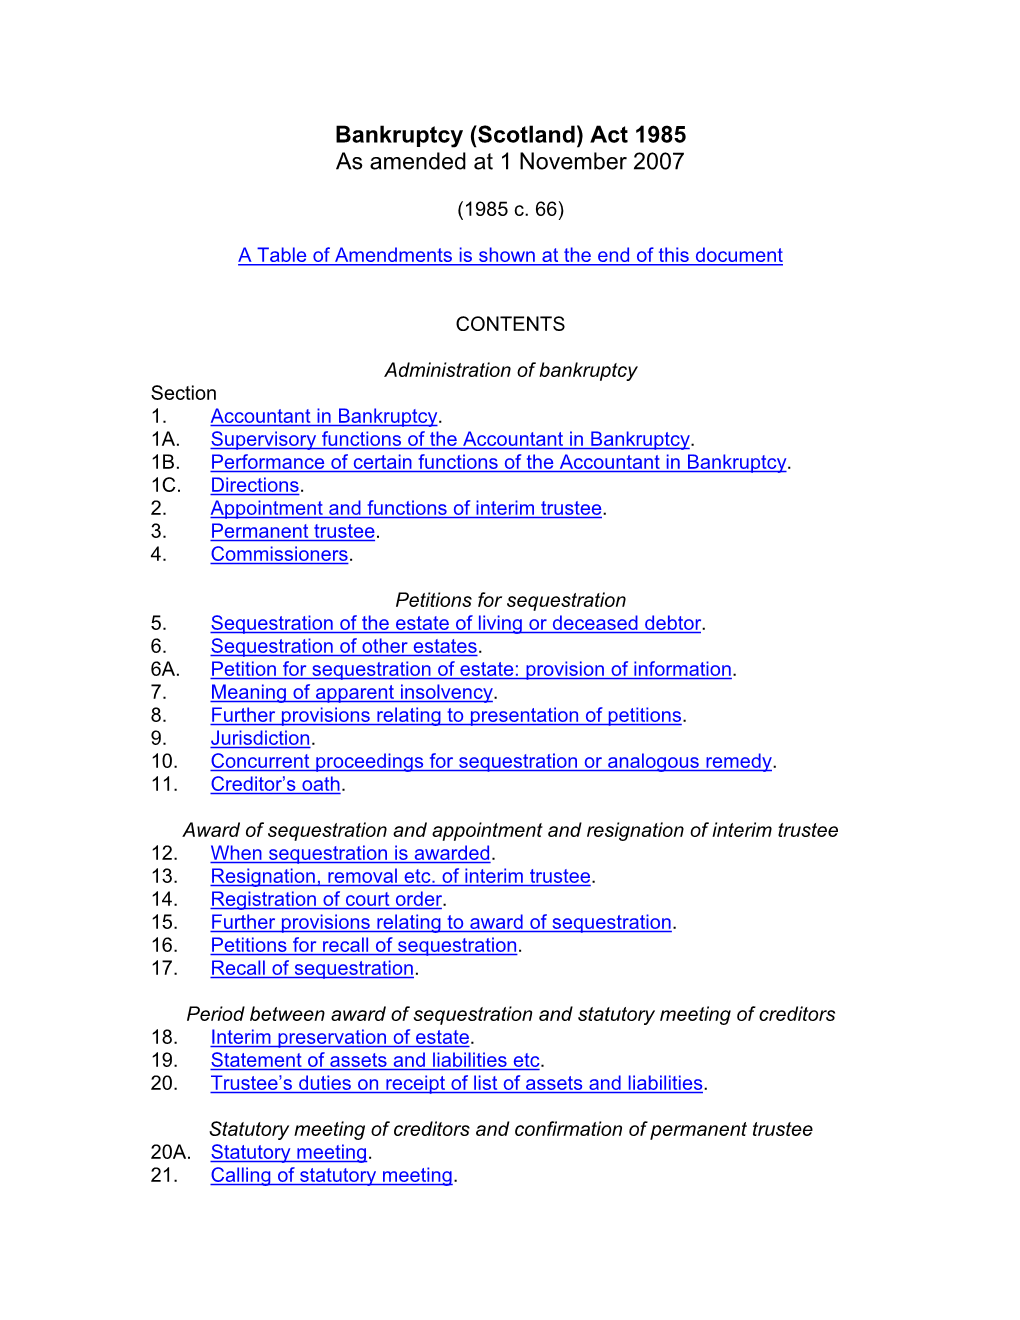 (Scotland) Act 1985 As Amended at 1 November 2007